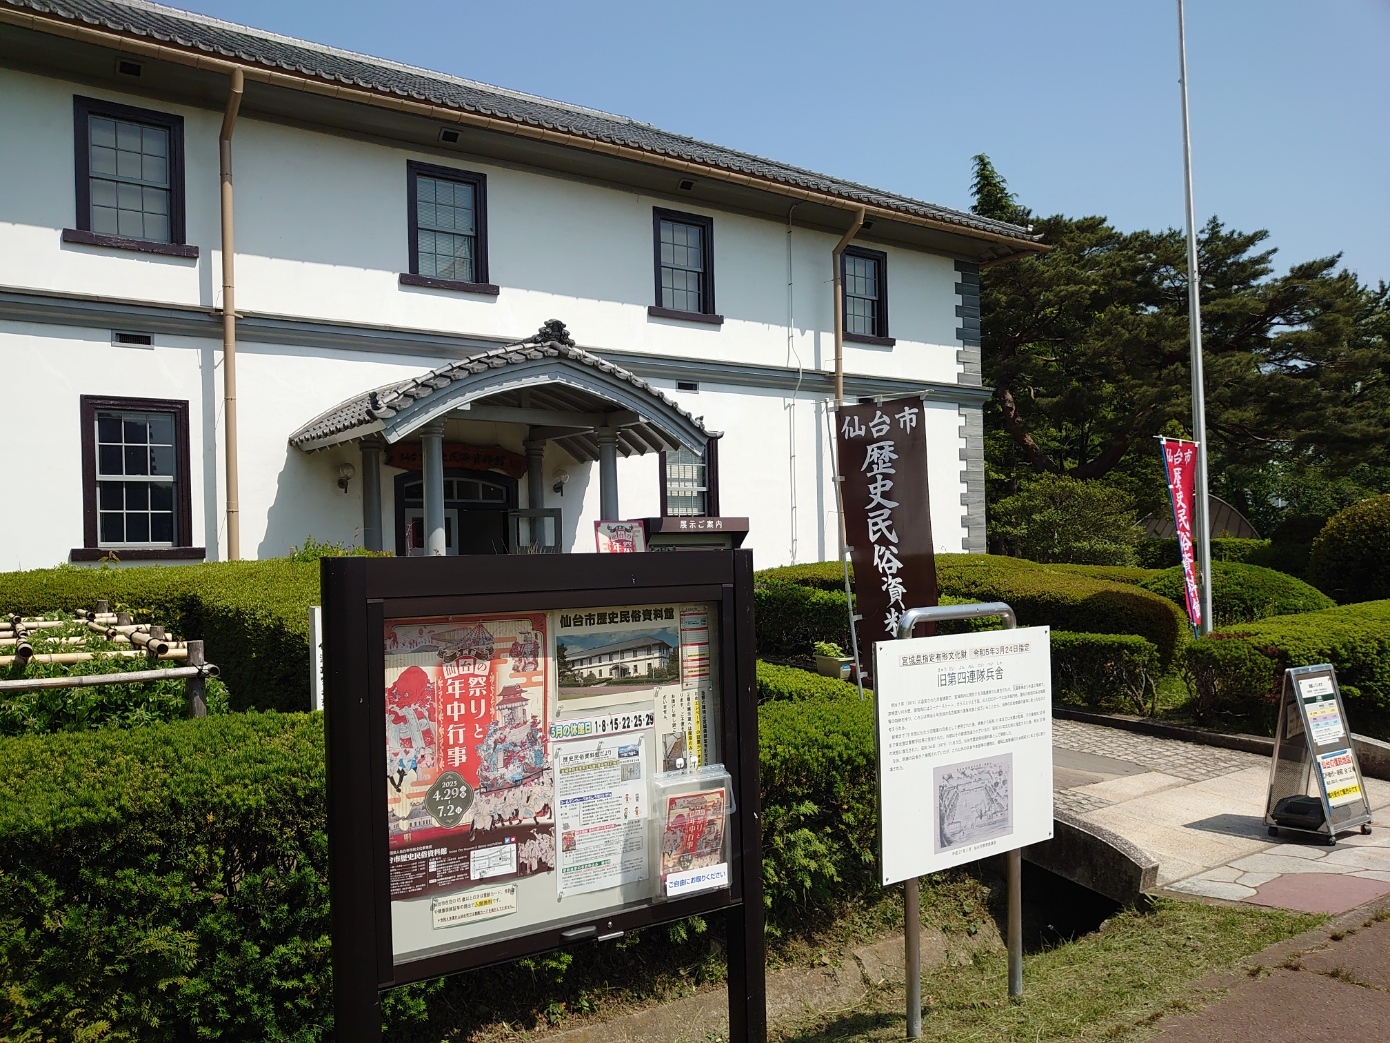 仙台市歴史民俗資料館の外観